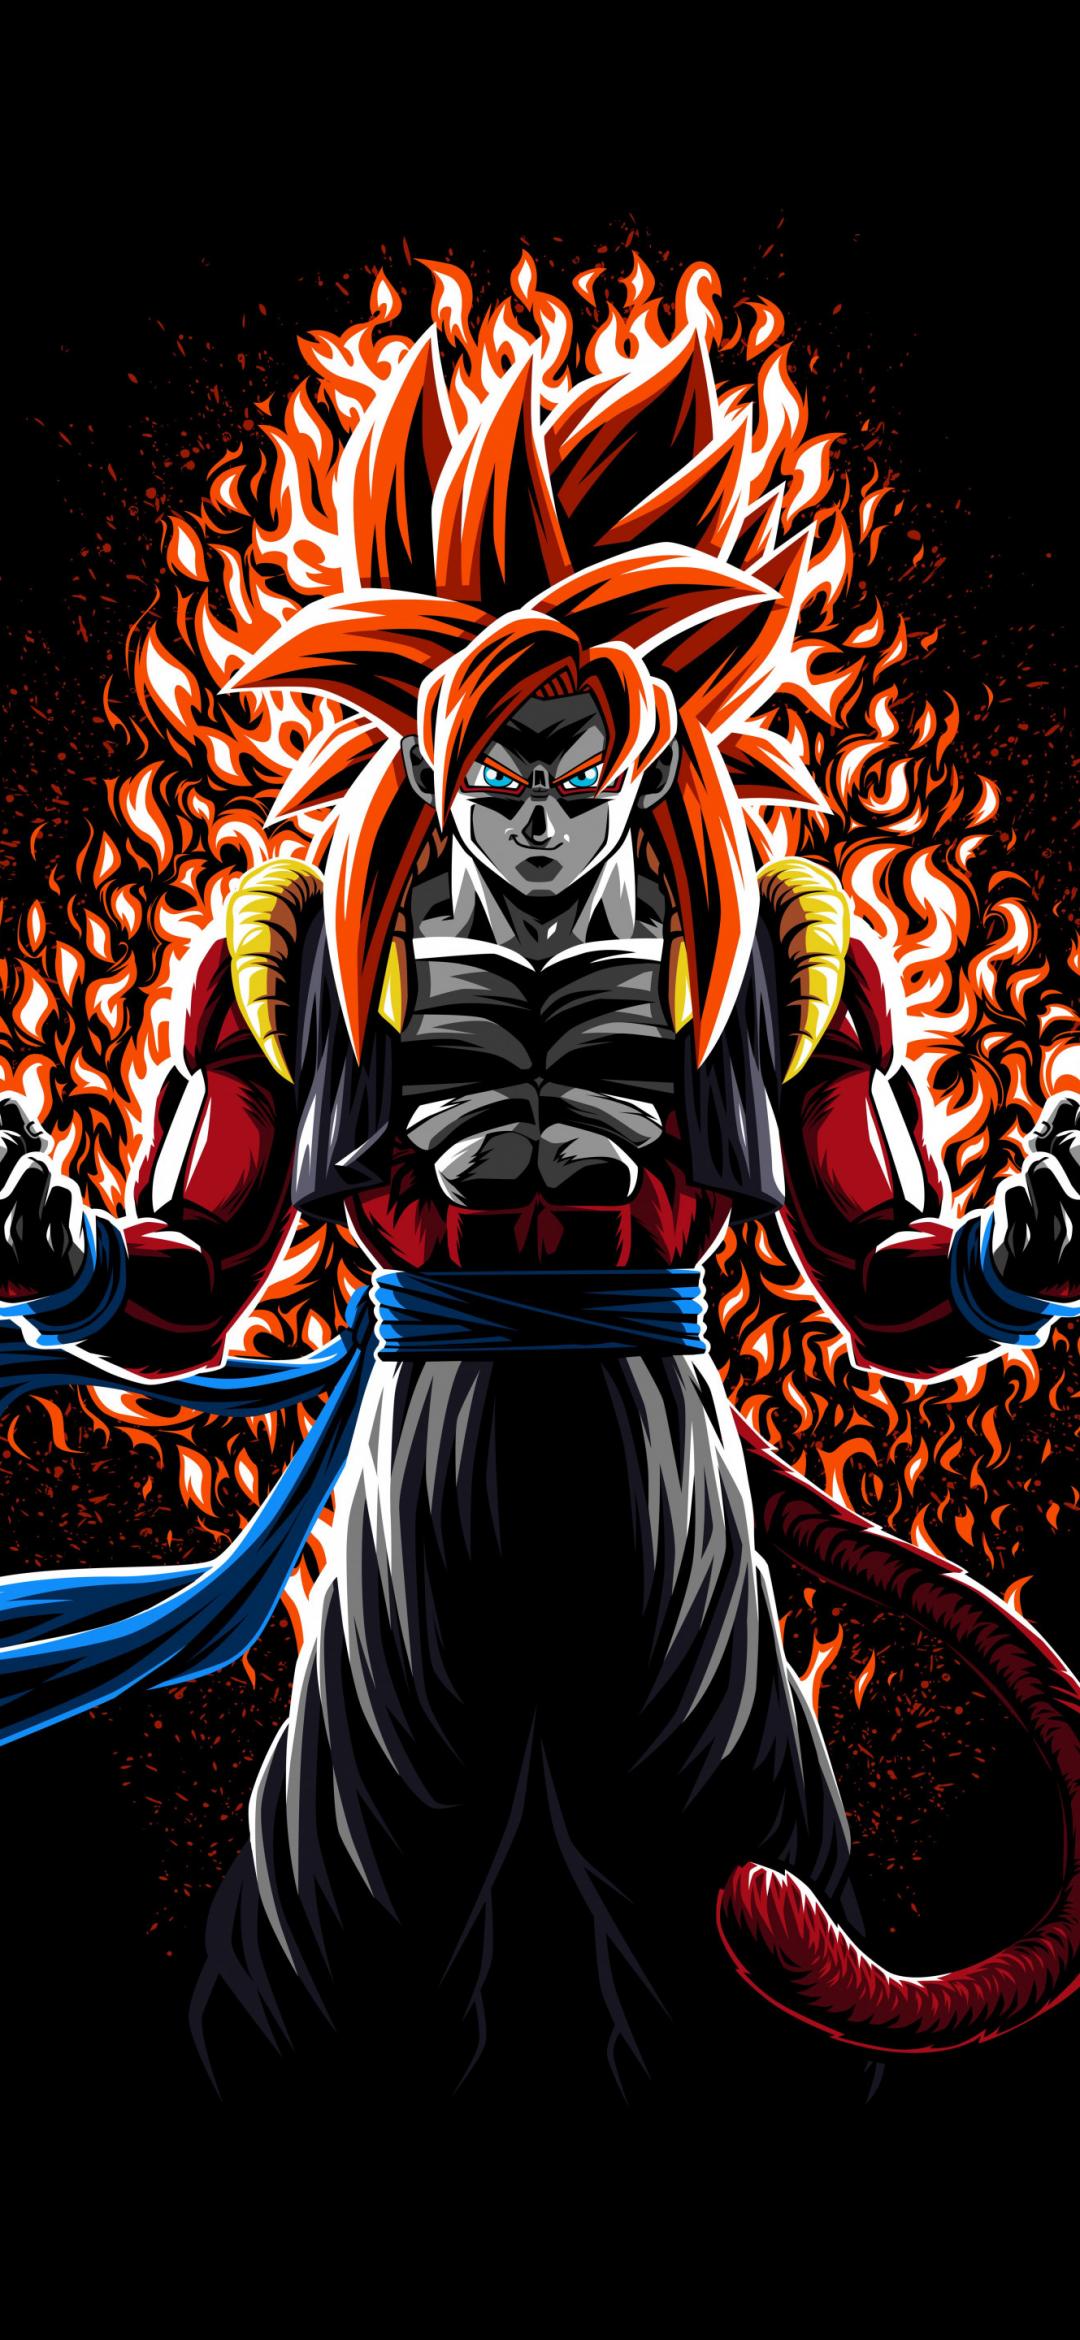 Goku: Phải chăng bạn từng mong muốn sở hữu sức mạnh siêu nhiên như Goku? Hãy xem ảnh liên quan đến chàng chiến binh siêu cấp này để tận hưởng những phiêu lưu đầy hấp dẫn và sự trở lại của những ký ức tuổi thơ đầy cảm xúc.